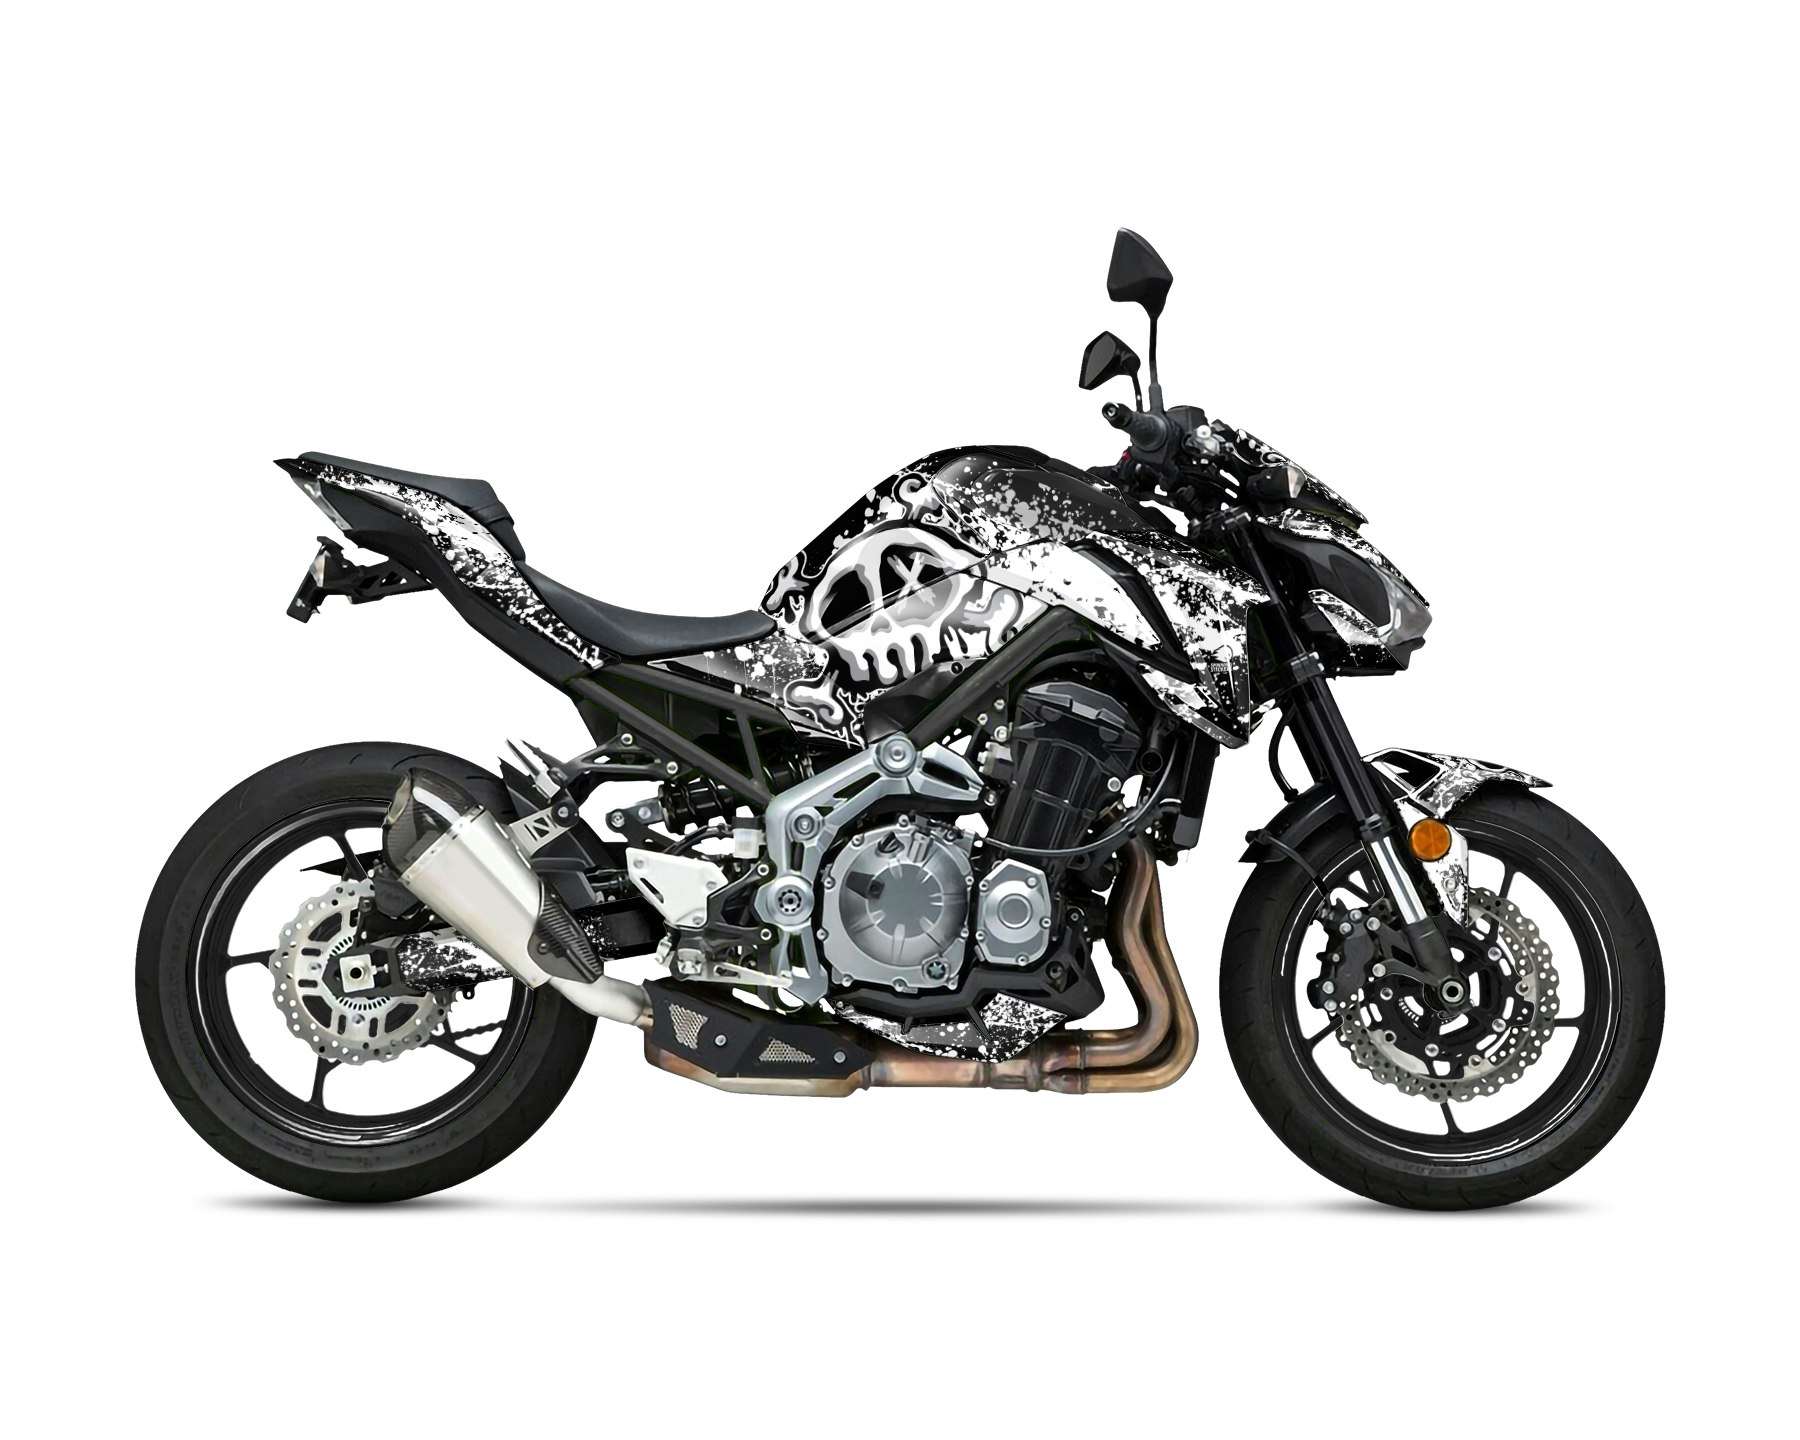 "Spirit" Motorrad Grafik-Kit - Design auf Anfrage